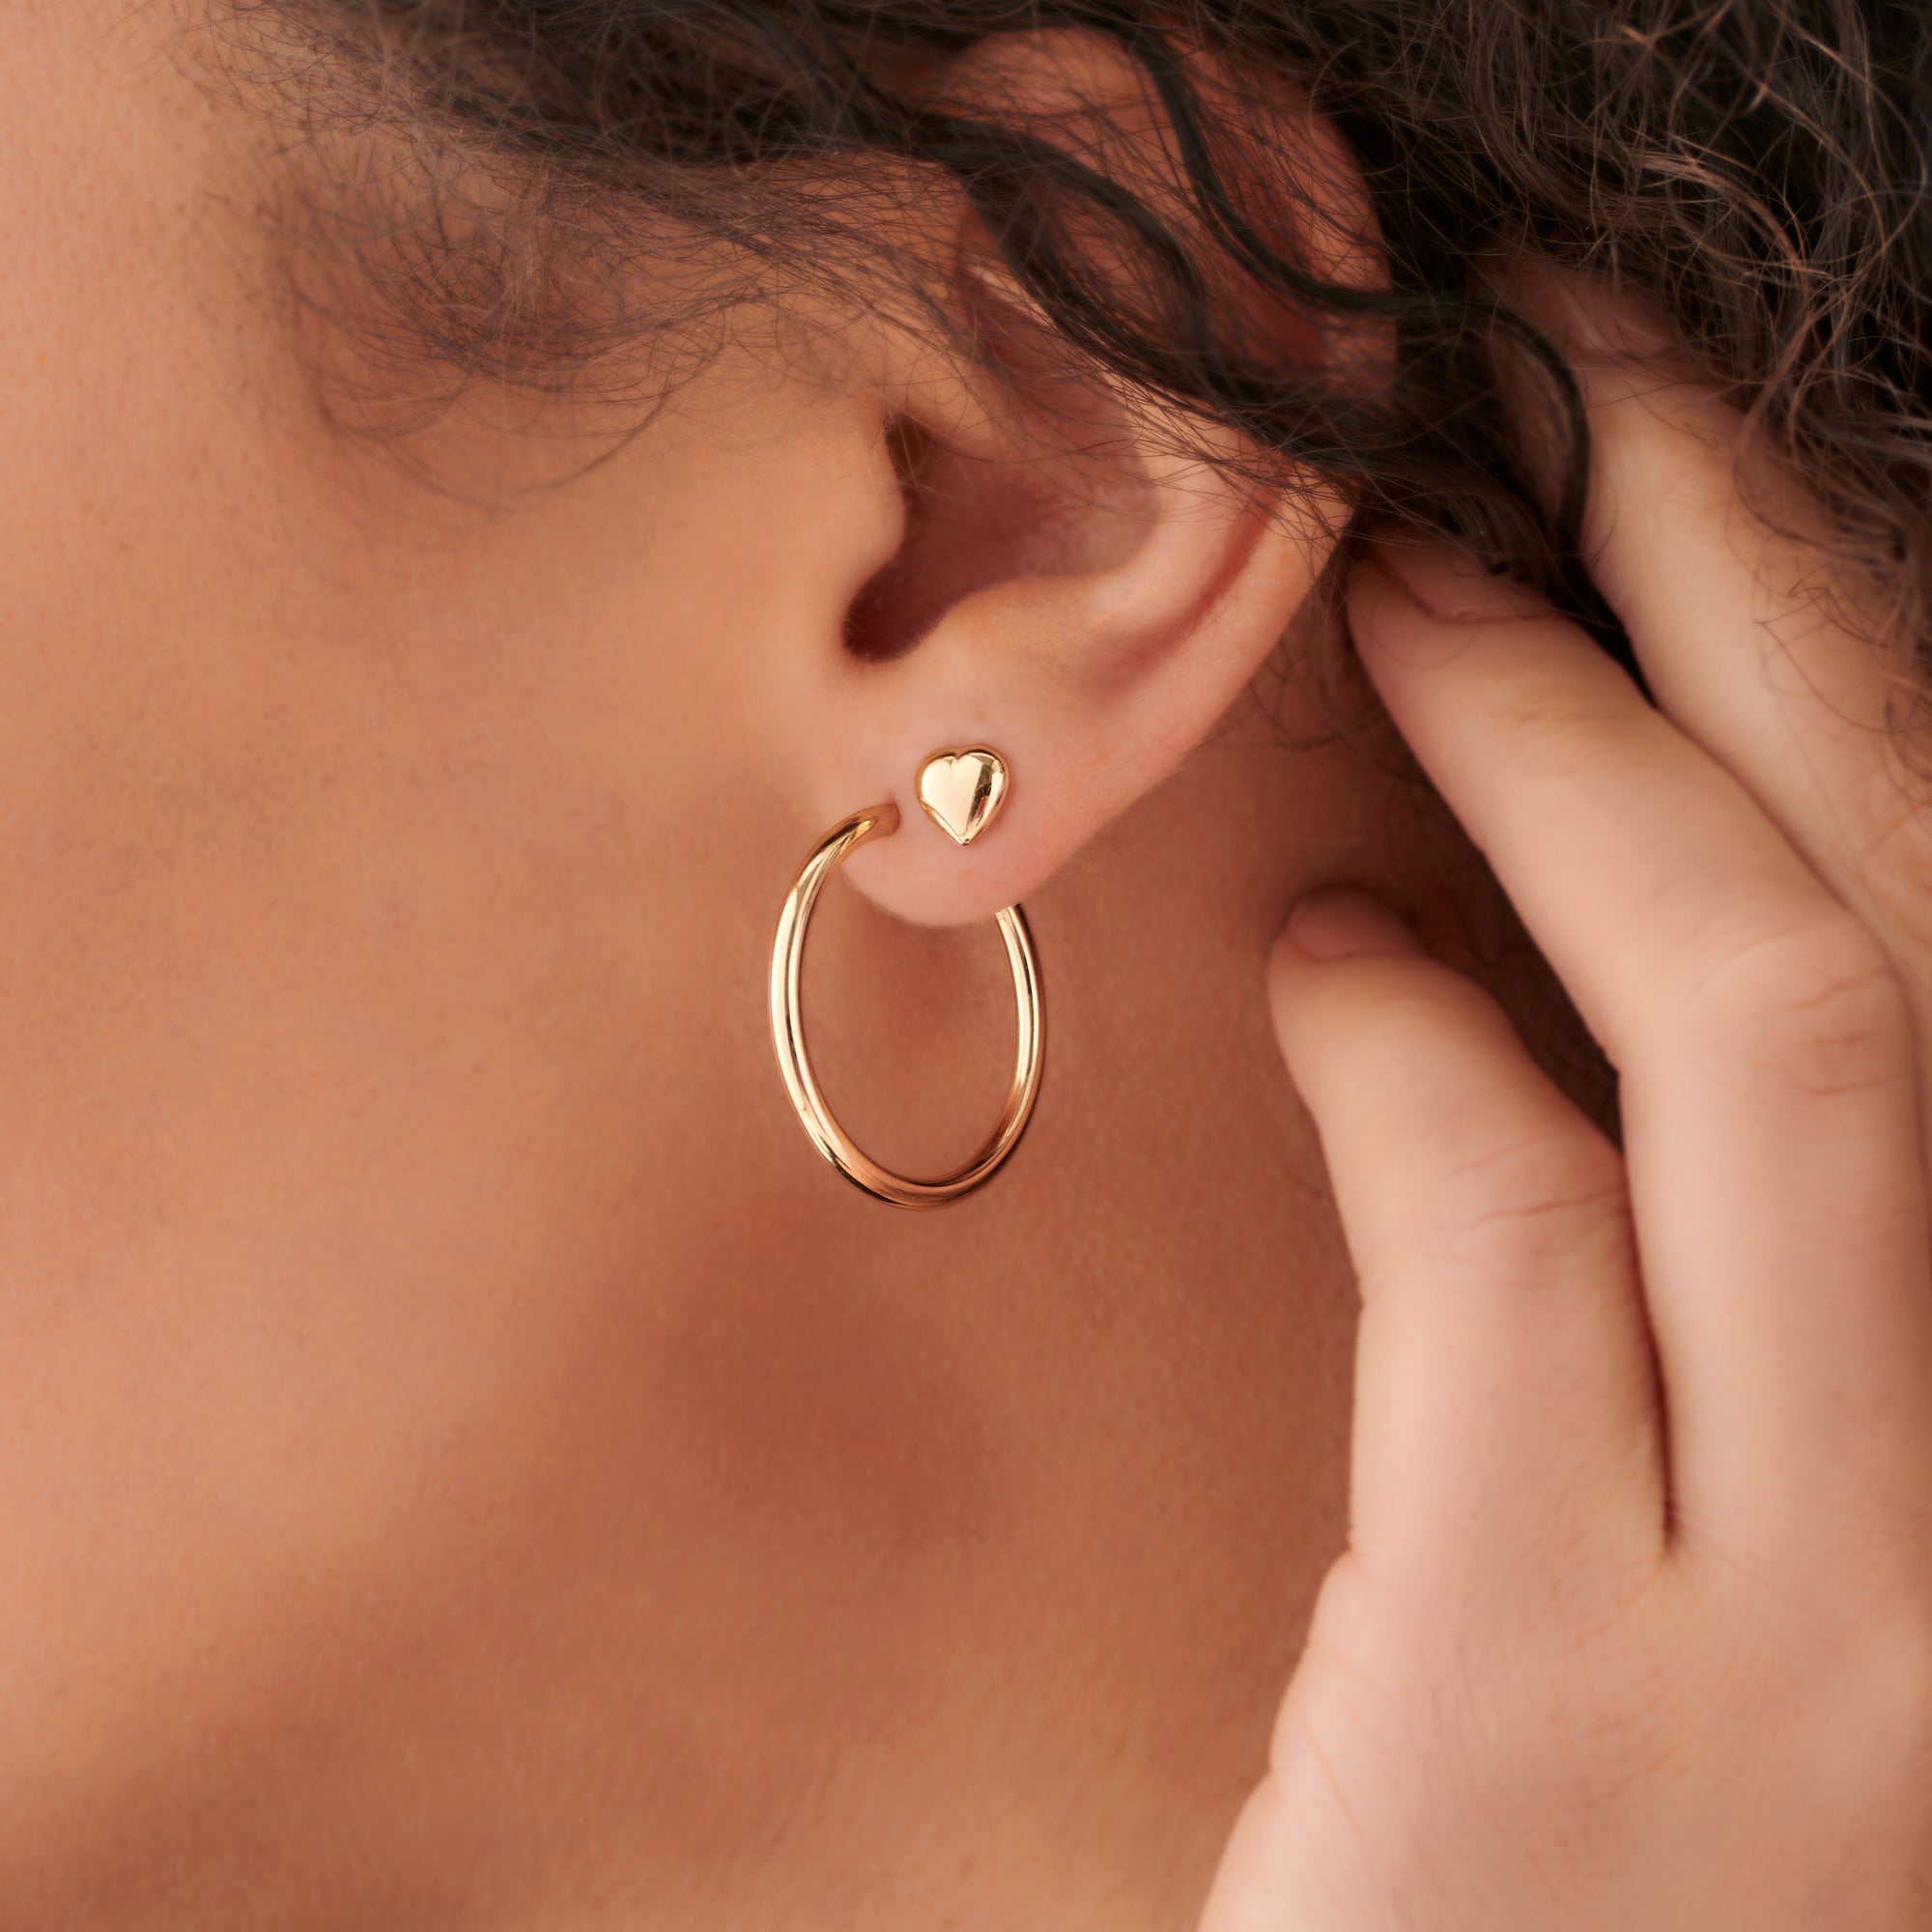 9ct Yellow Gold 20mm Hoop Earrings